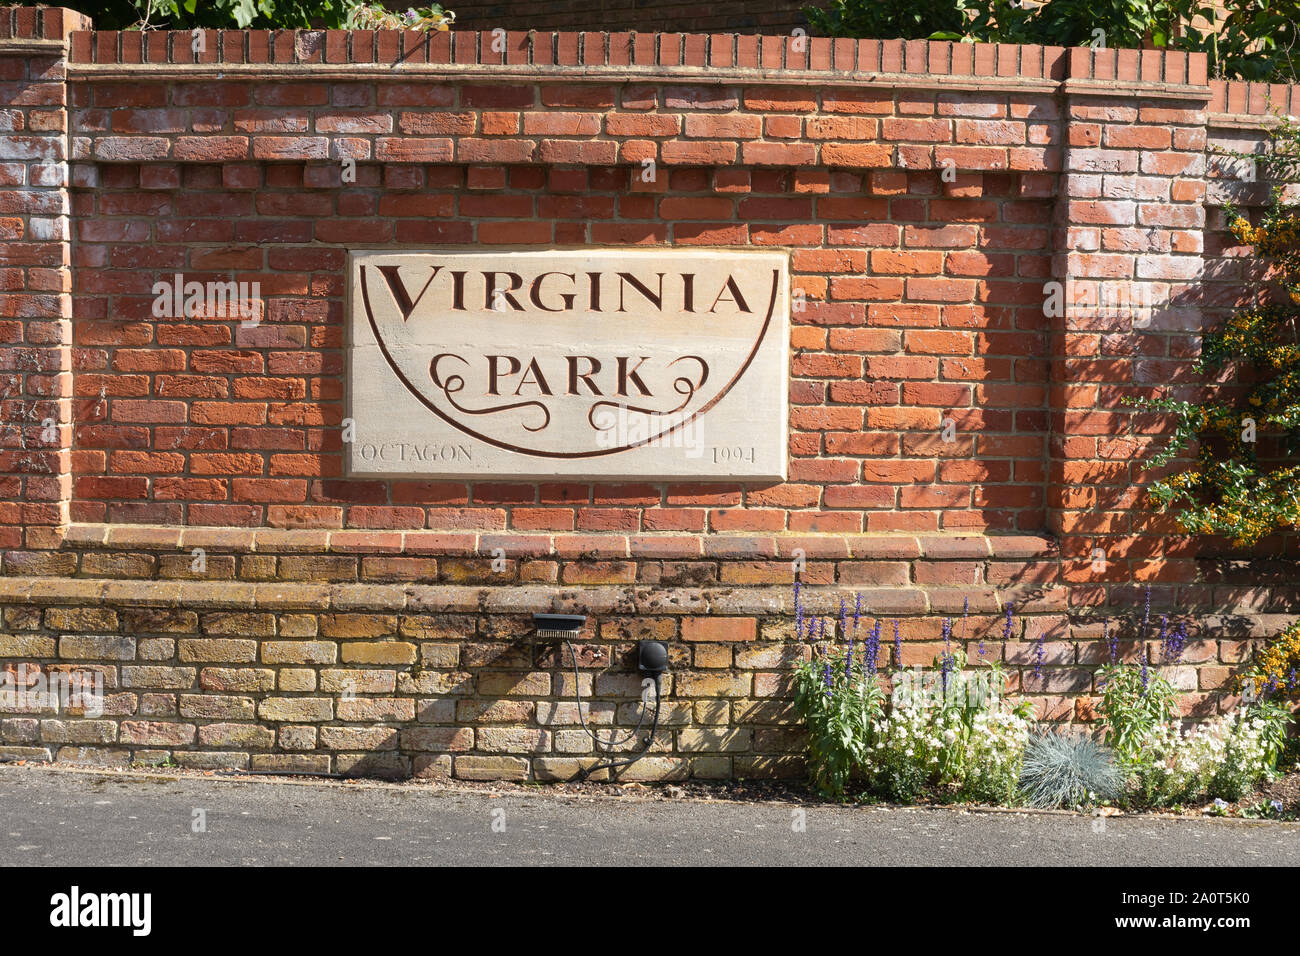 Entrée de Virginia Park, une résidence fermée, à Virginia Water, Surrey, UK Banque D'Images